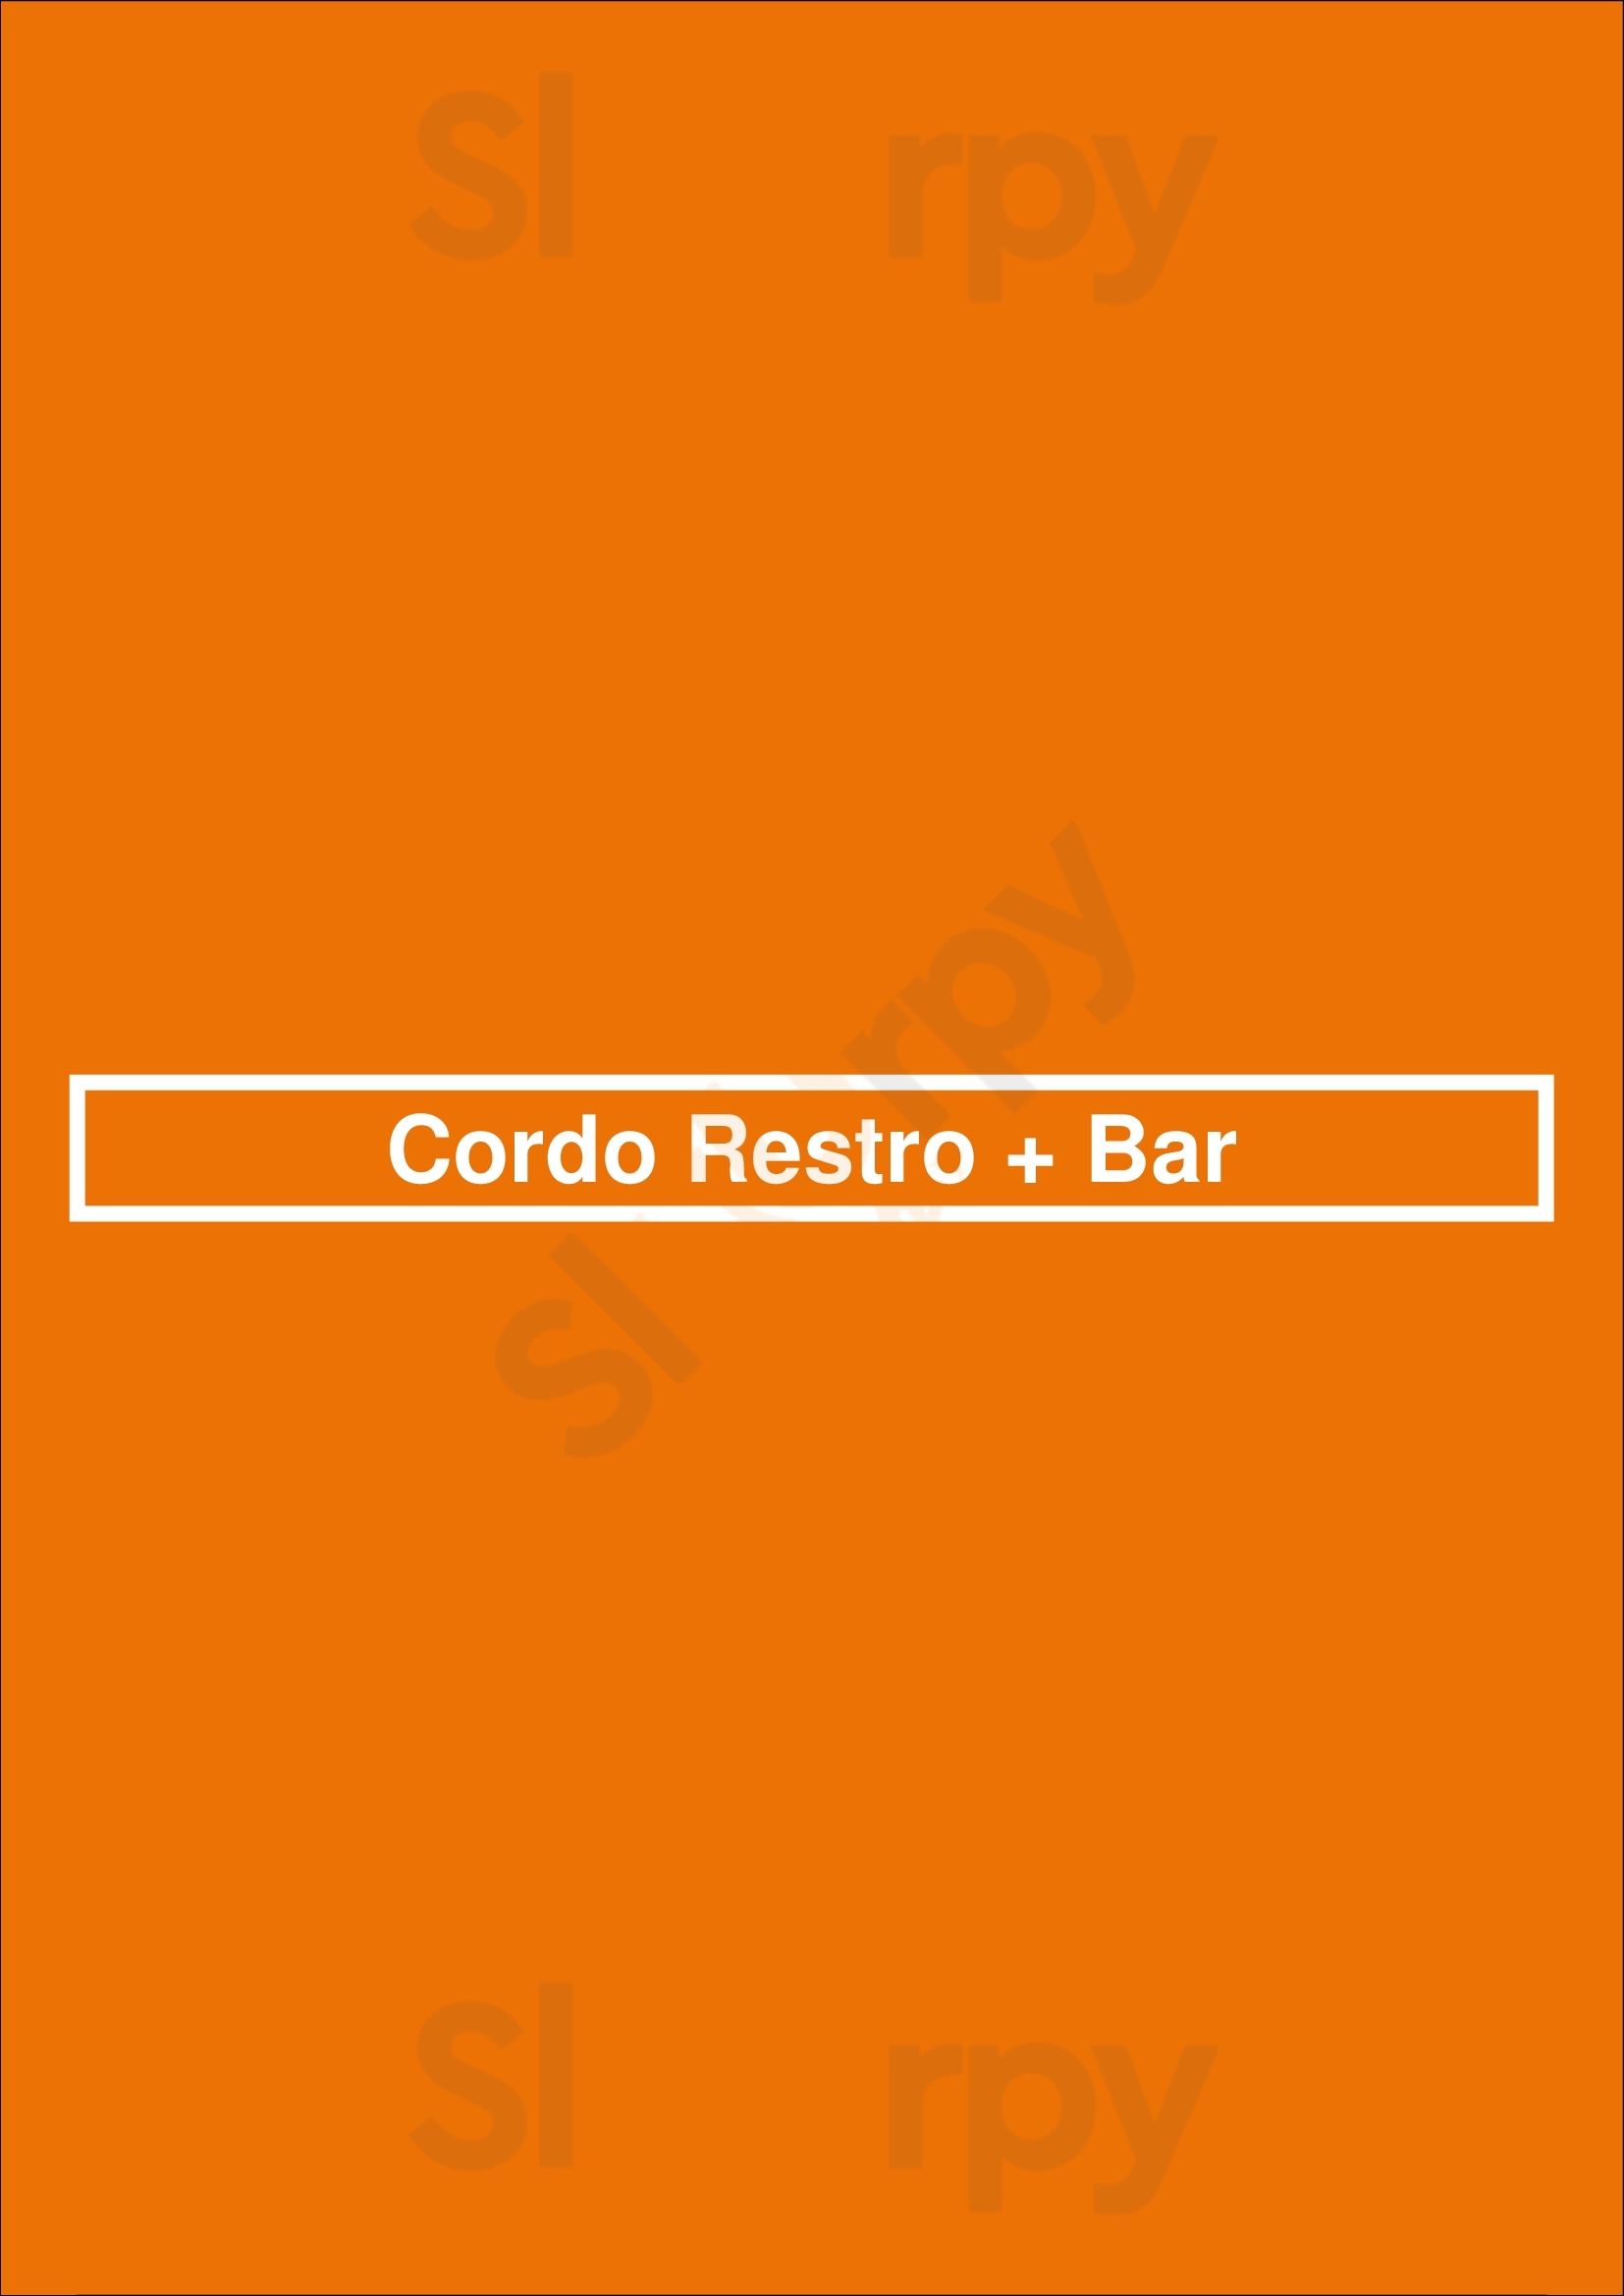 Cordo Resto + Bar Kamloops Menu - 1